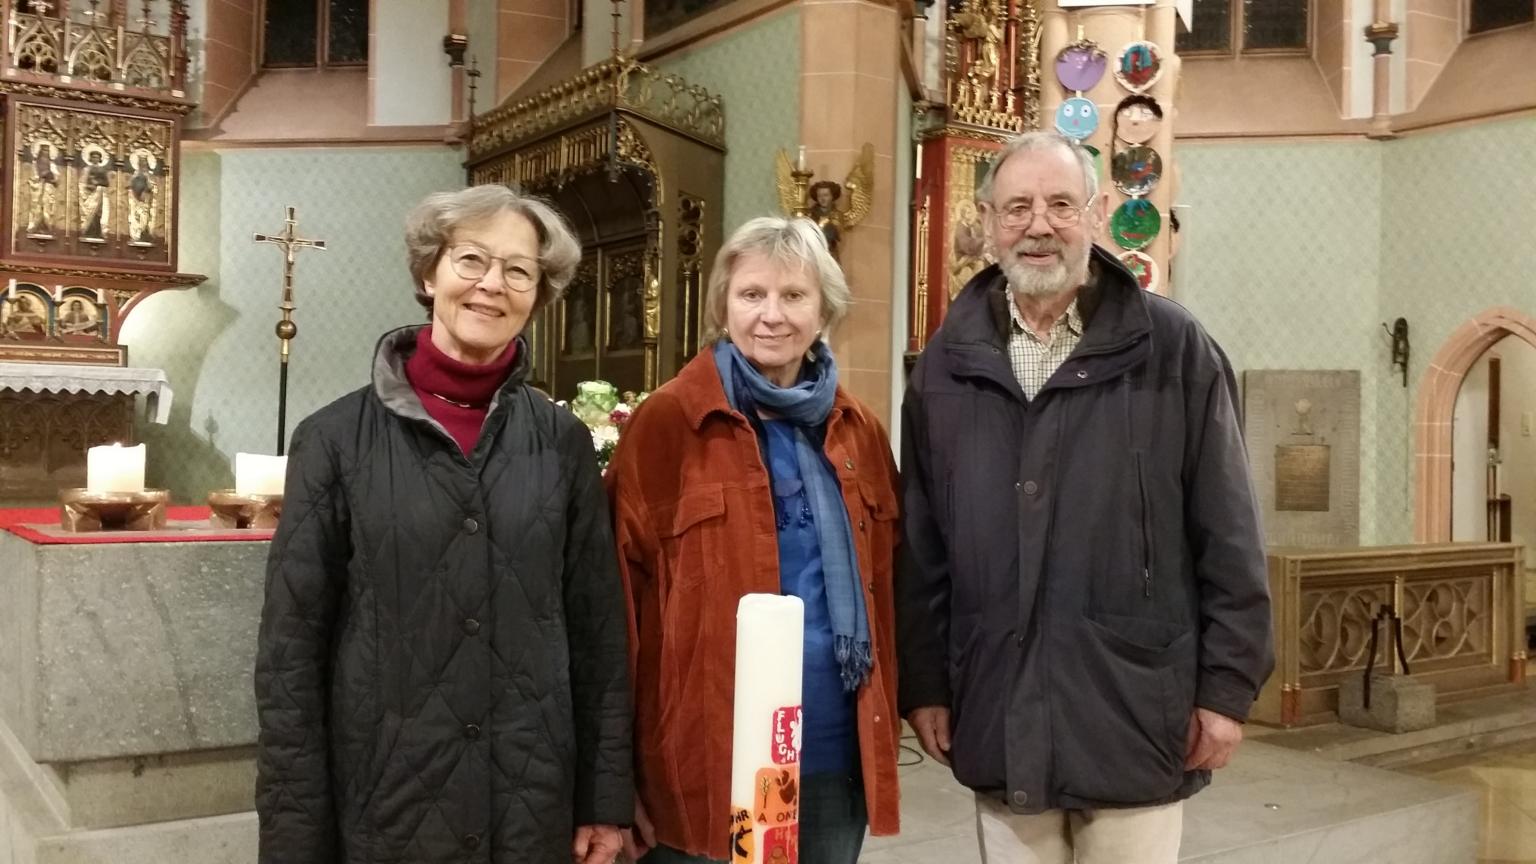 Engagieren sich für das Friedensgebet: Susanne Barner, Anne Hagel und Günter Frey. (c) Anja Weiffen